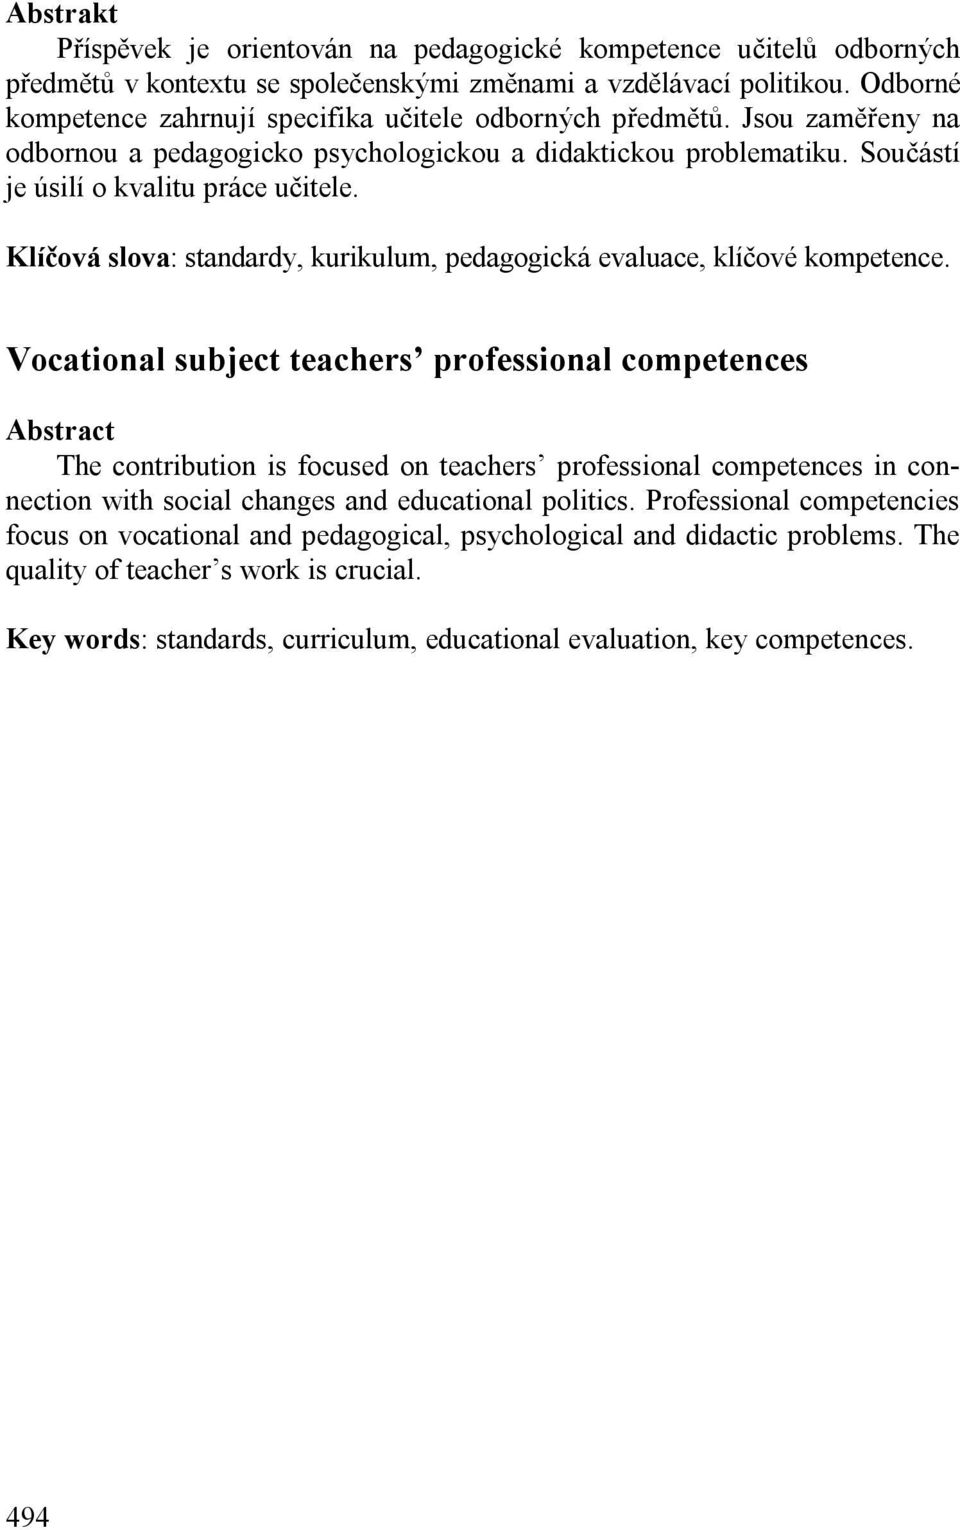 Klíčová slova: standardy, kurikulum, pedagogická evaluace, klíčové kompetence.